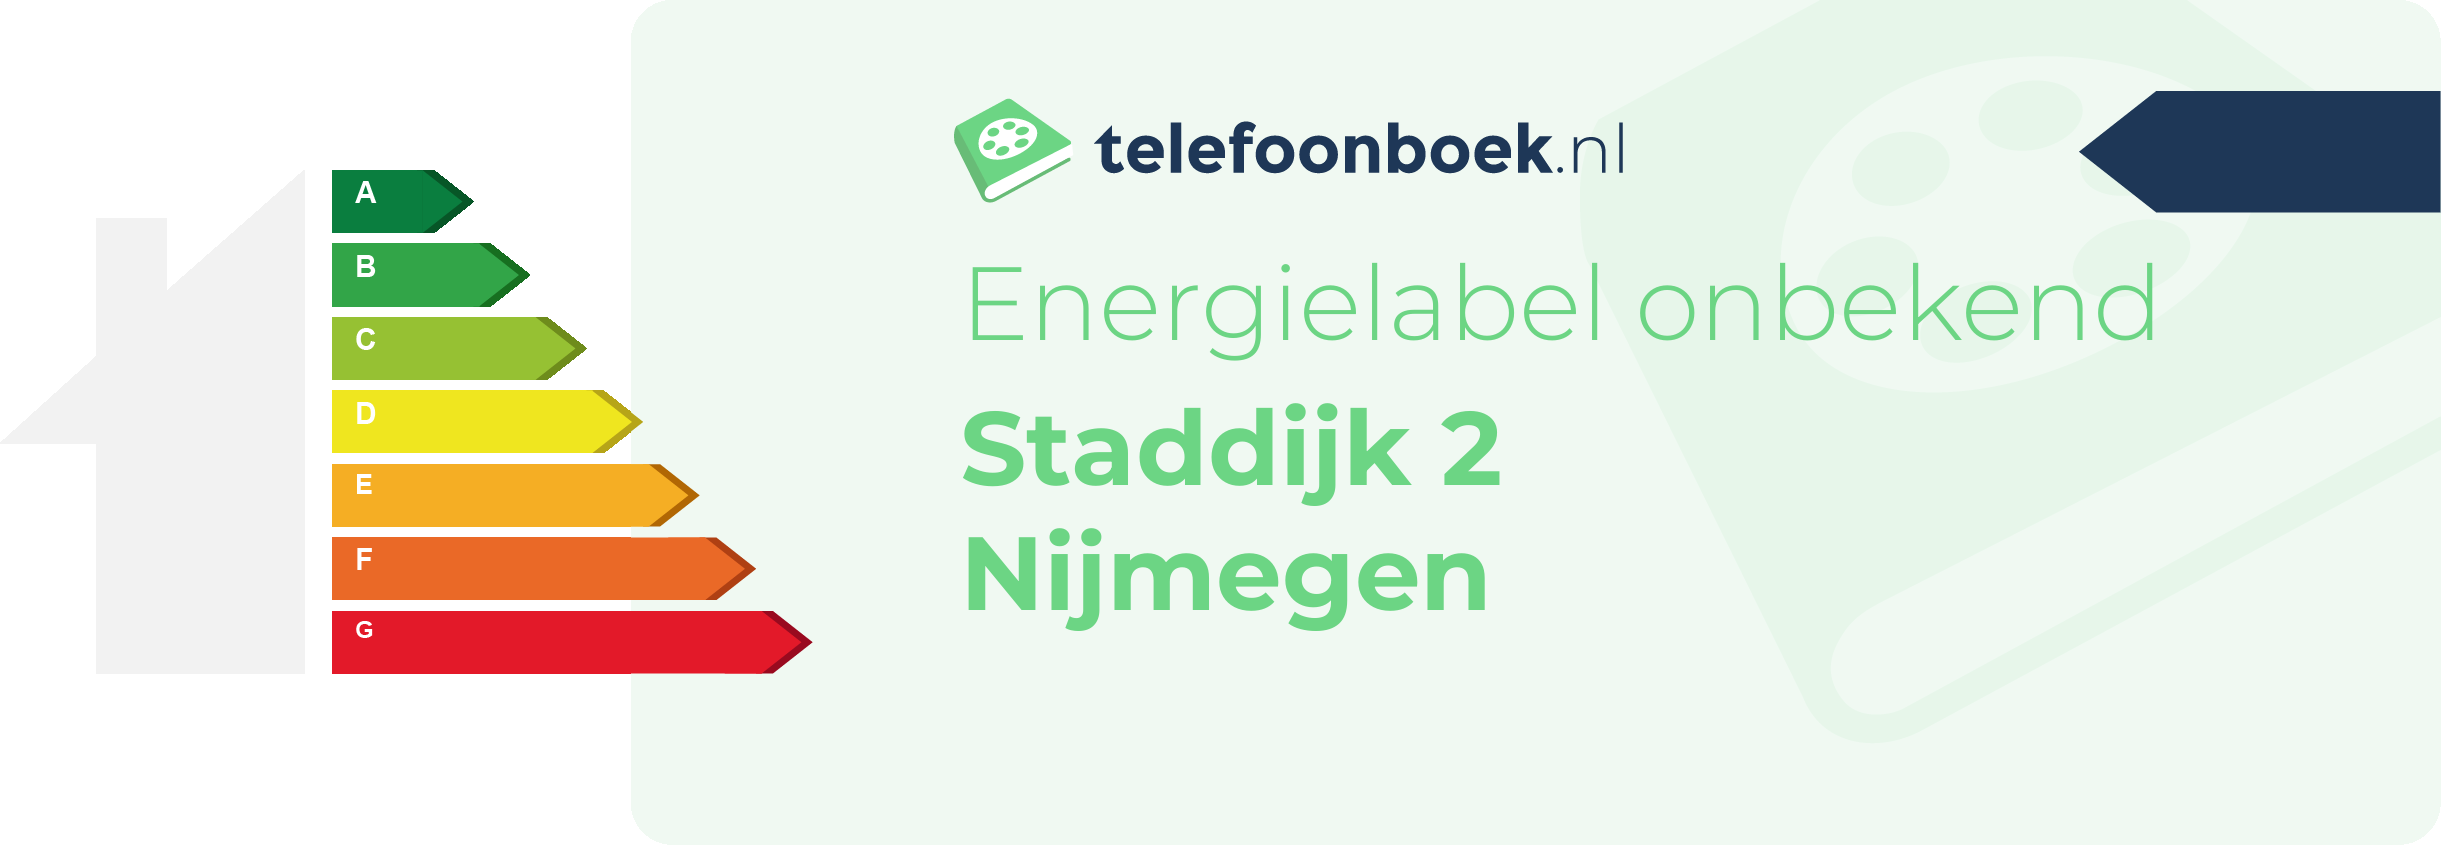 Energielabel Staddijk 2 Nijmegen